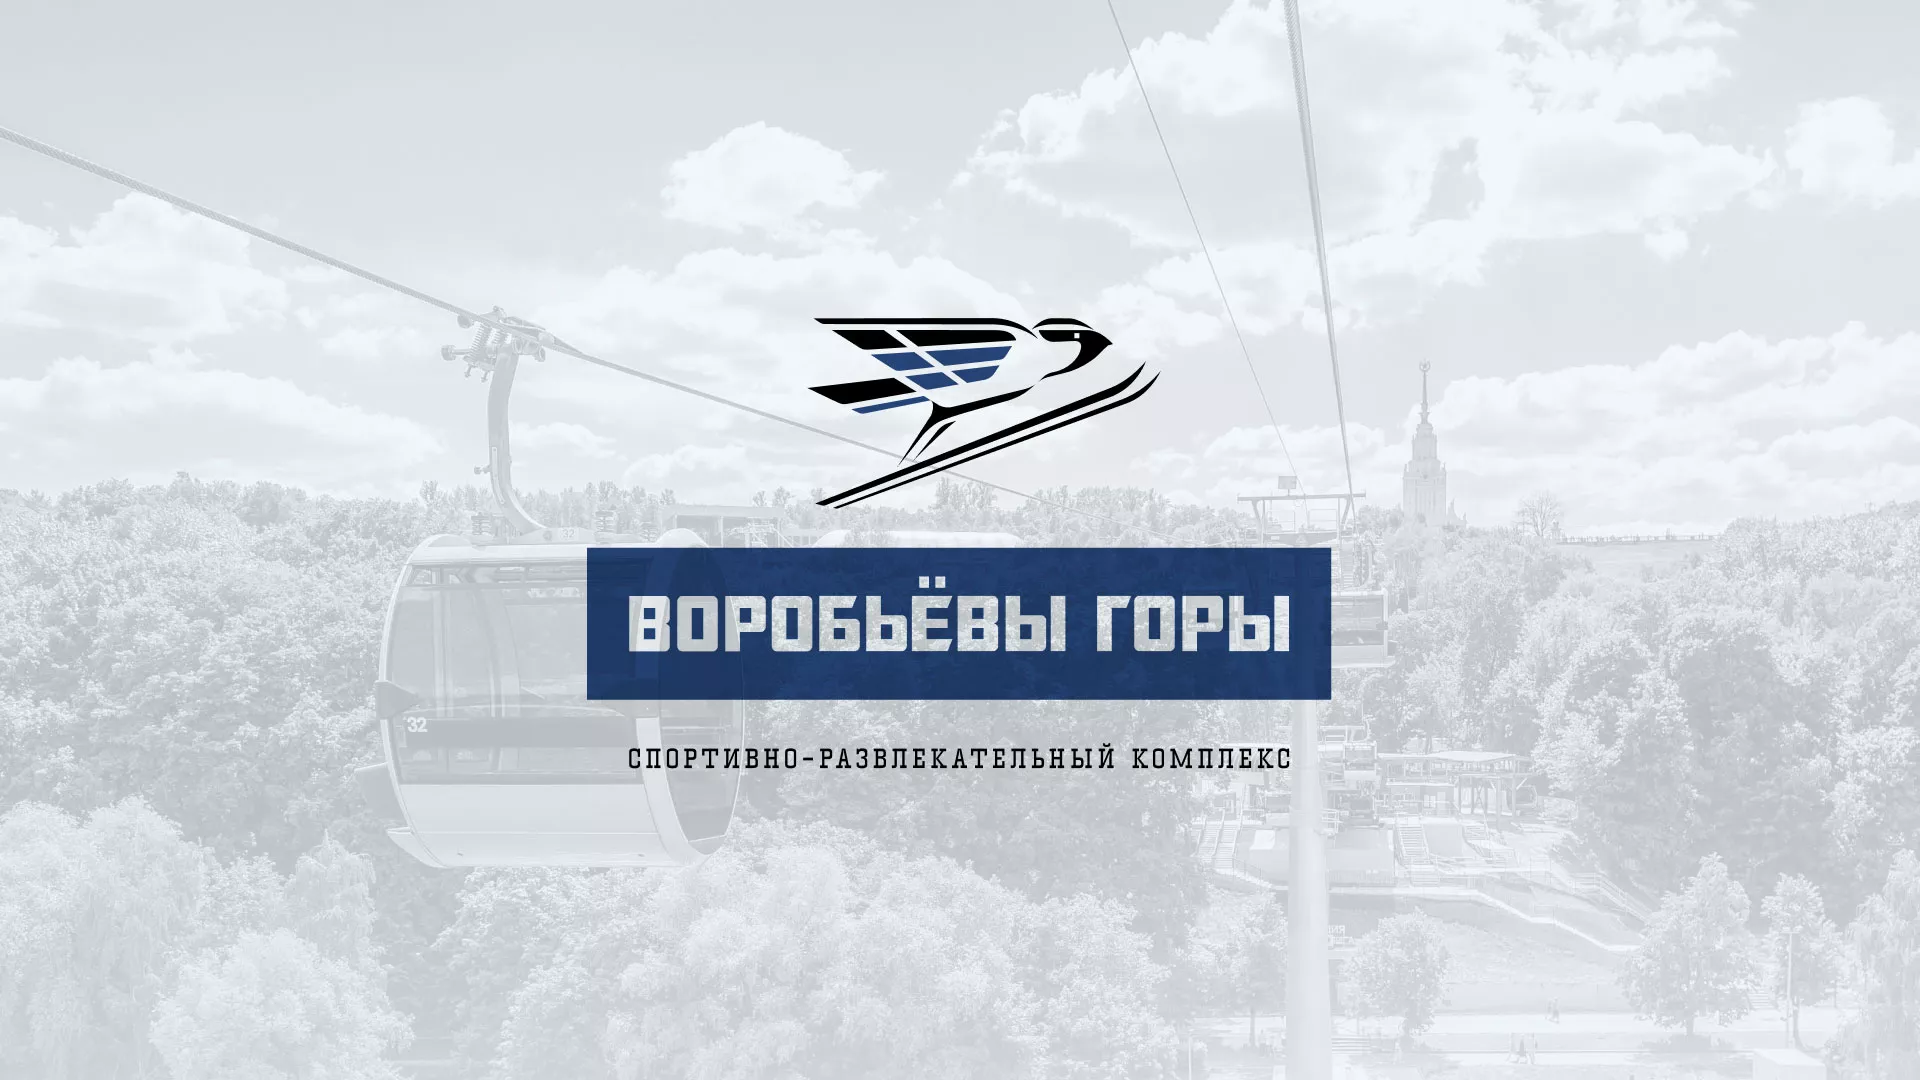 Разработка сайта в Ладушкине для спортивно-развлекательного комплекса «Воробьёвы горы»